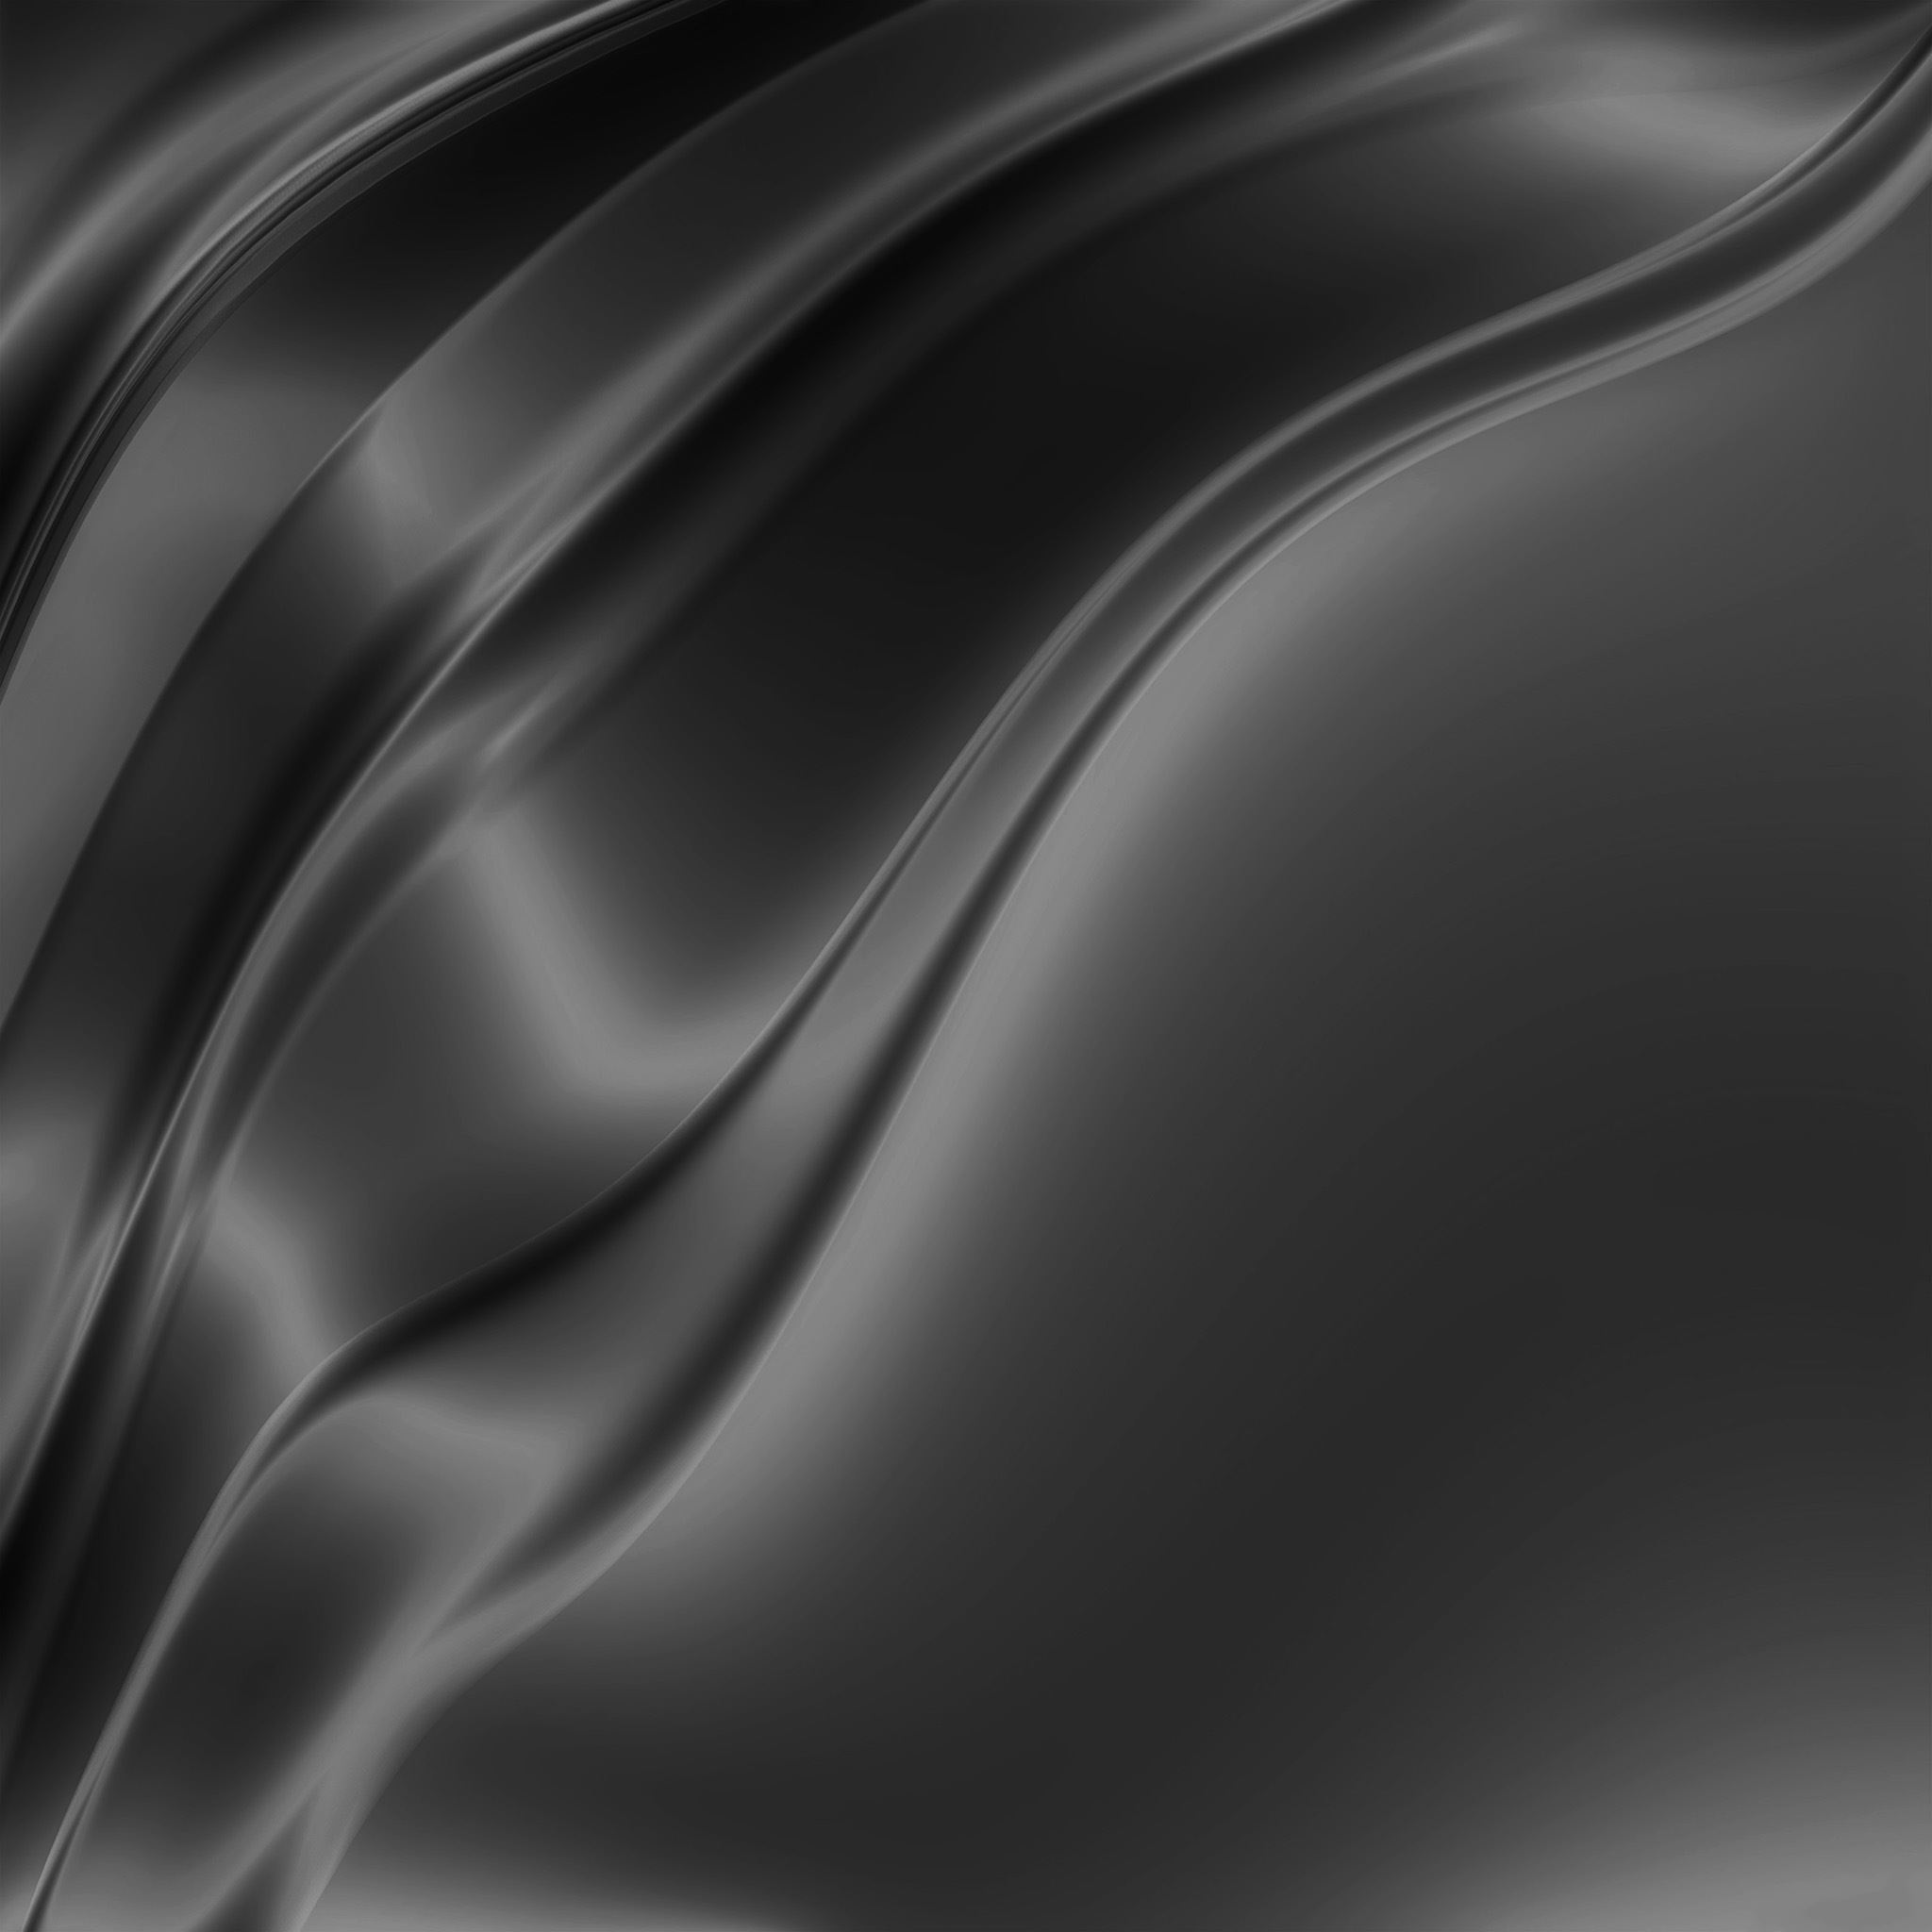 Texture Slik Soft Bw Dark Galaxy Pattern iPad Air Wallpapers Free Download